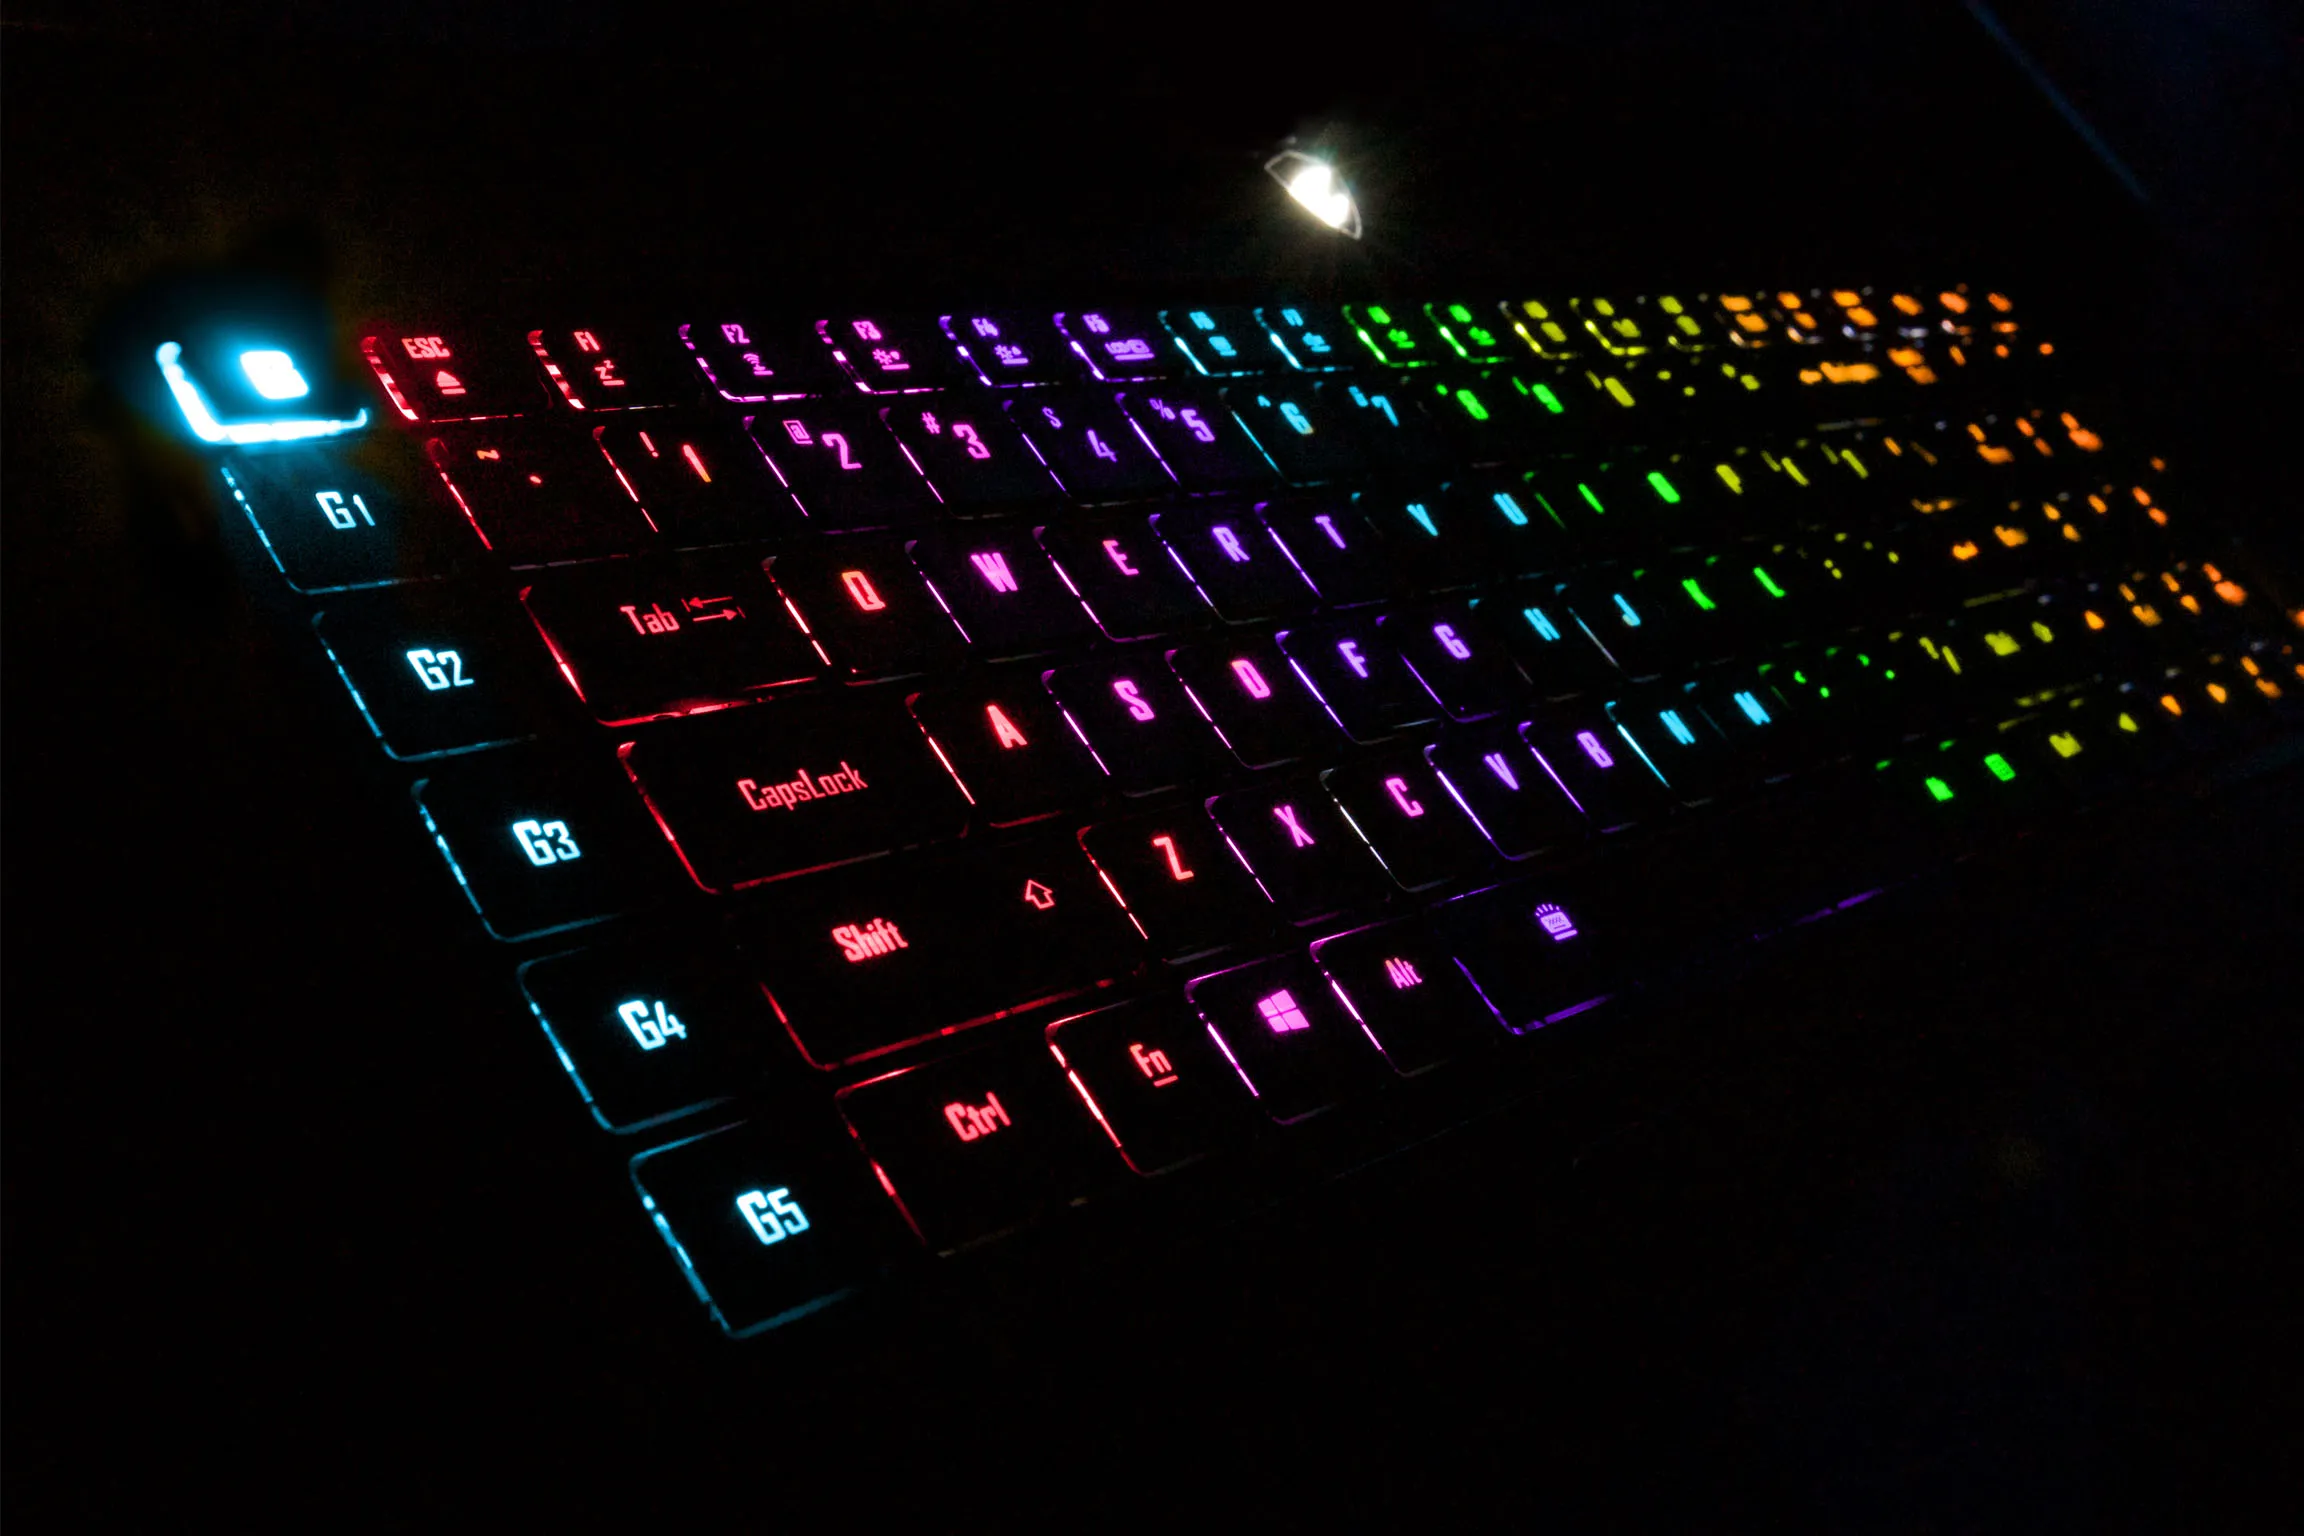 Chrome OS ganhou suporte a teclados com iluminação RGB